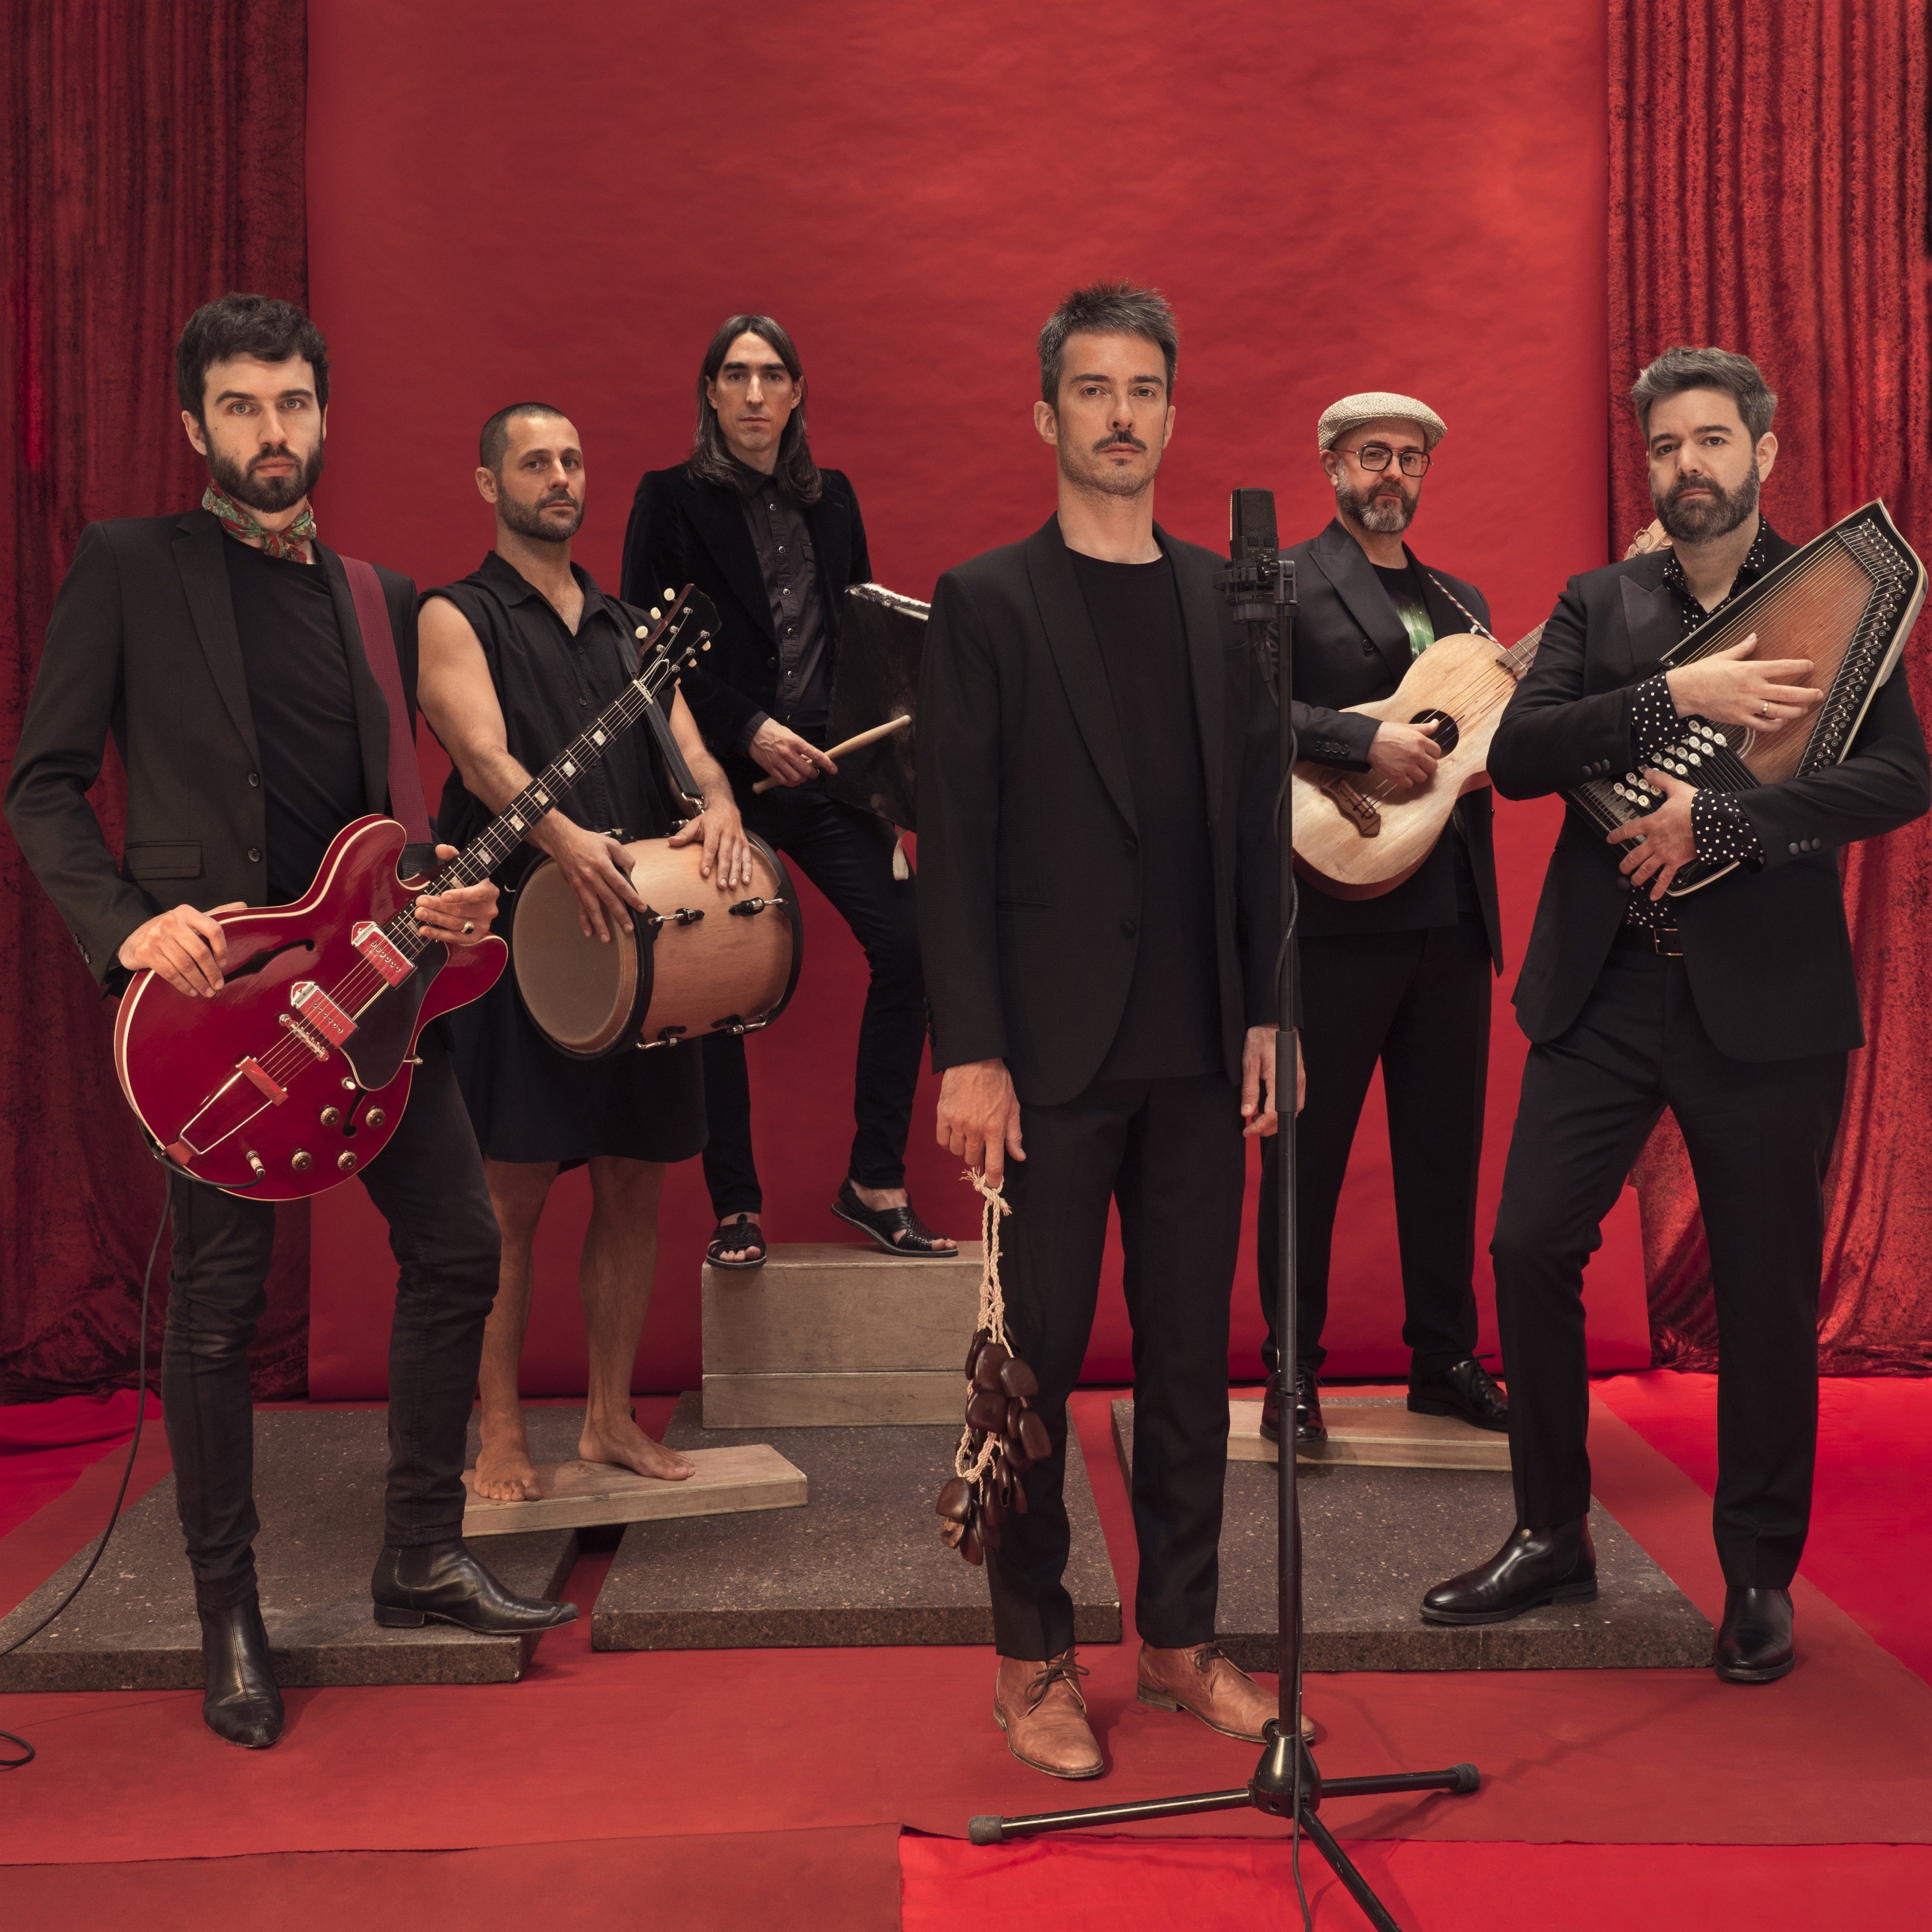 Vetusta Morla trepitja Barcelona: 5 curiositats sobre la banda que va fer enlairar l'indie